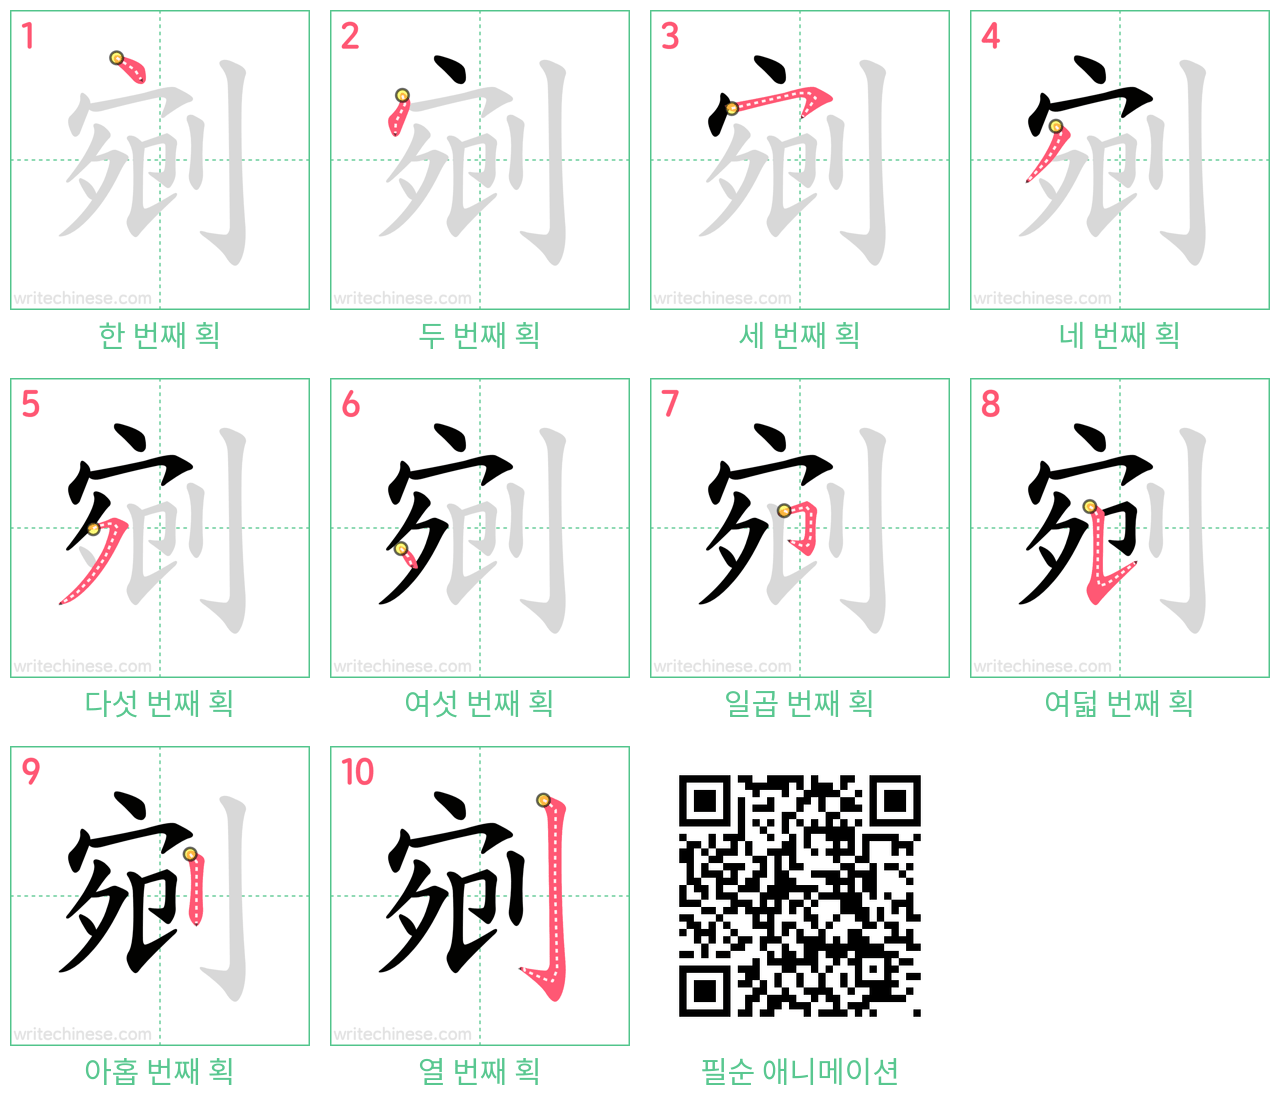 剜 step-by-step stroke order diagrams